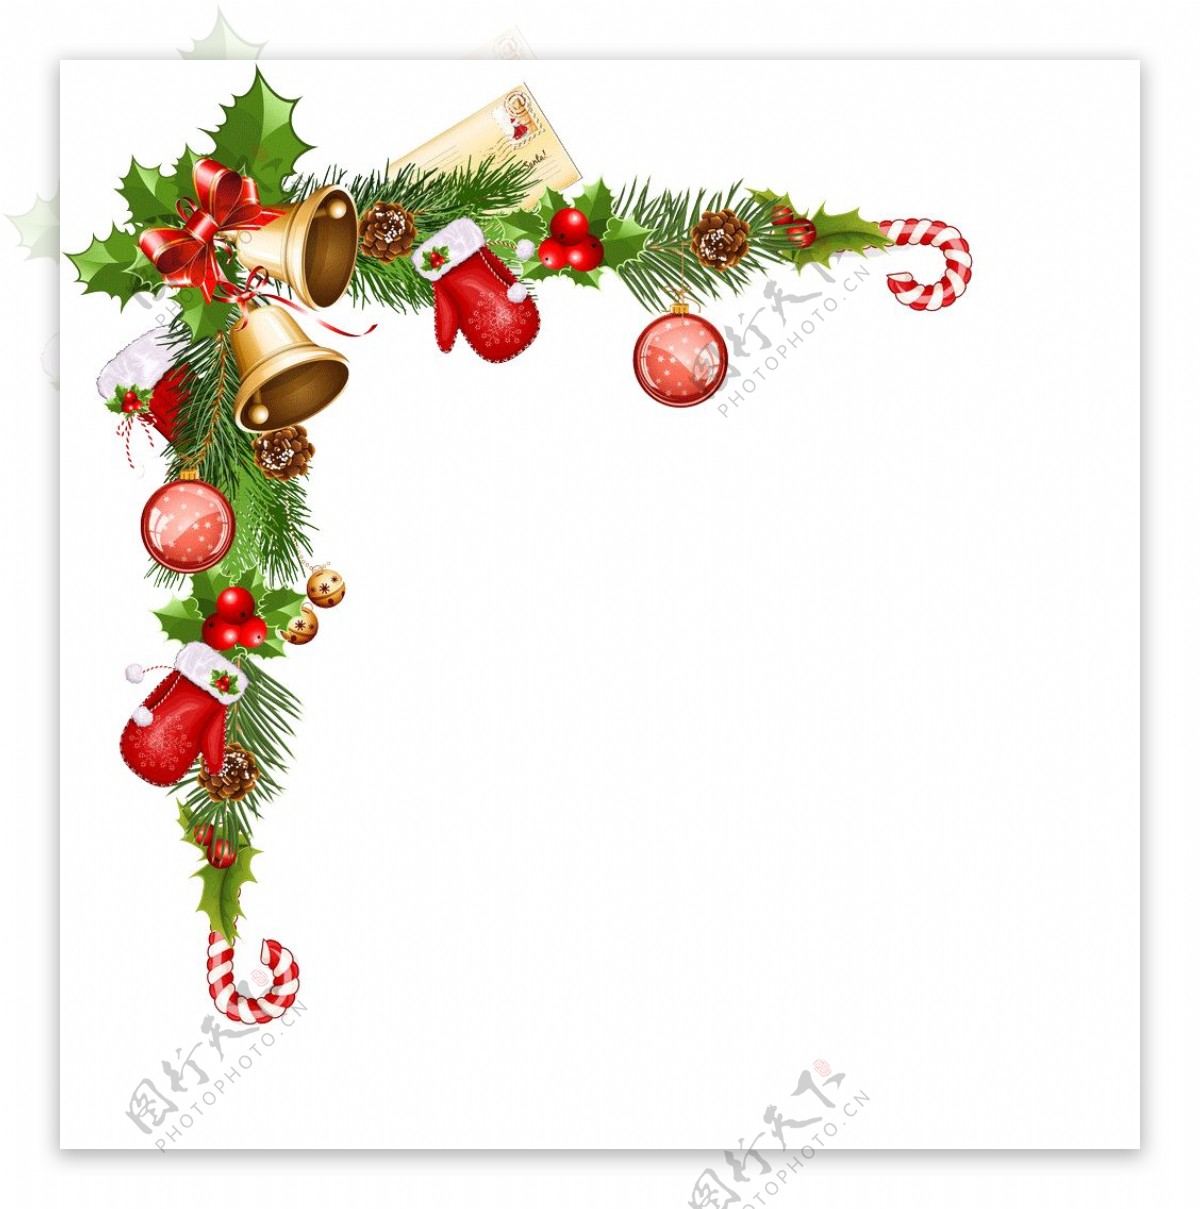 圣诞松枝铃铛手套边角装饰元素